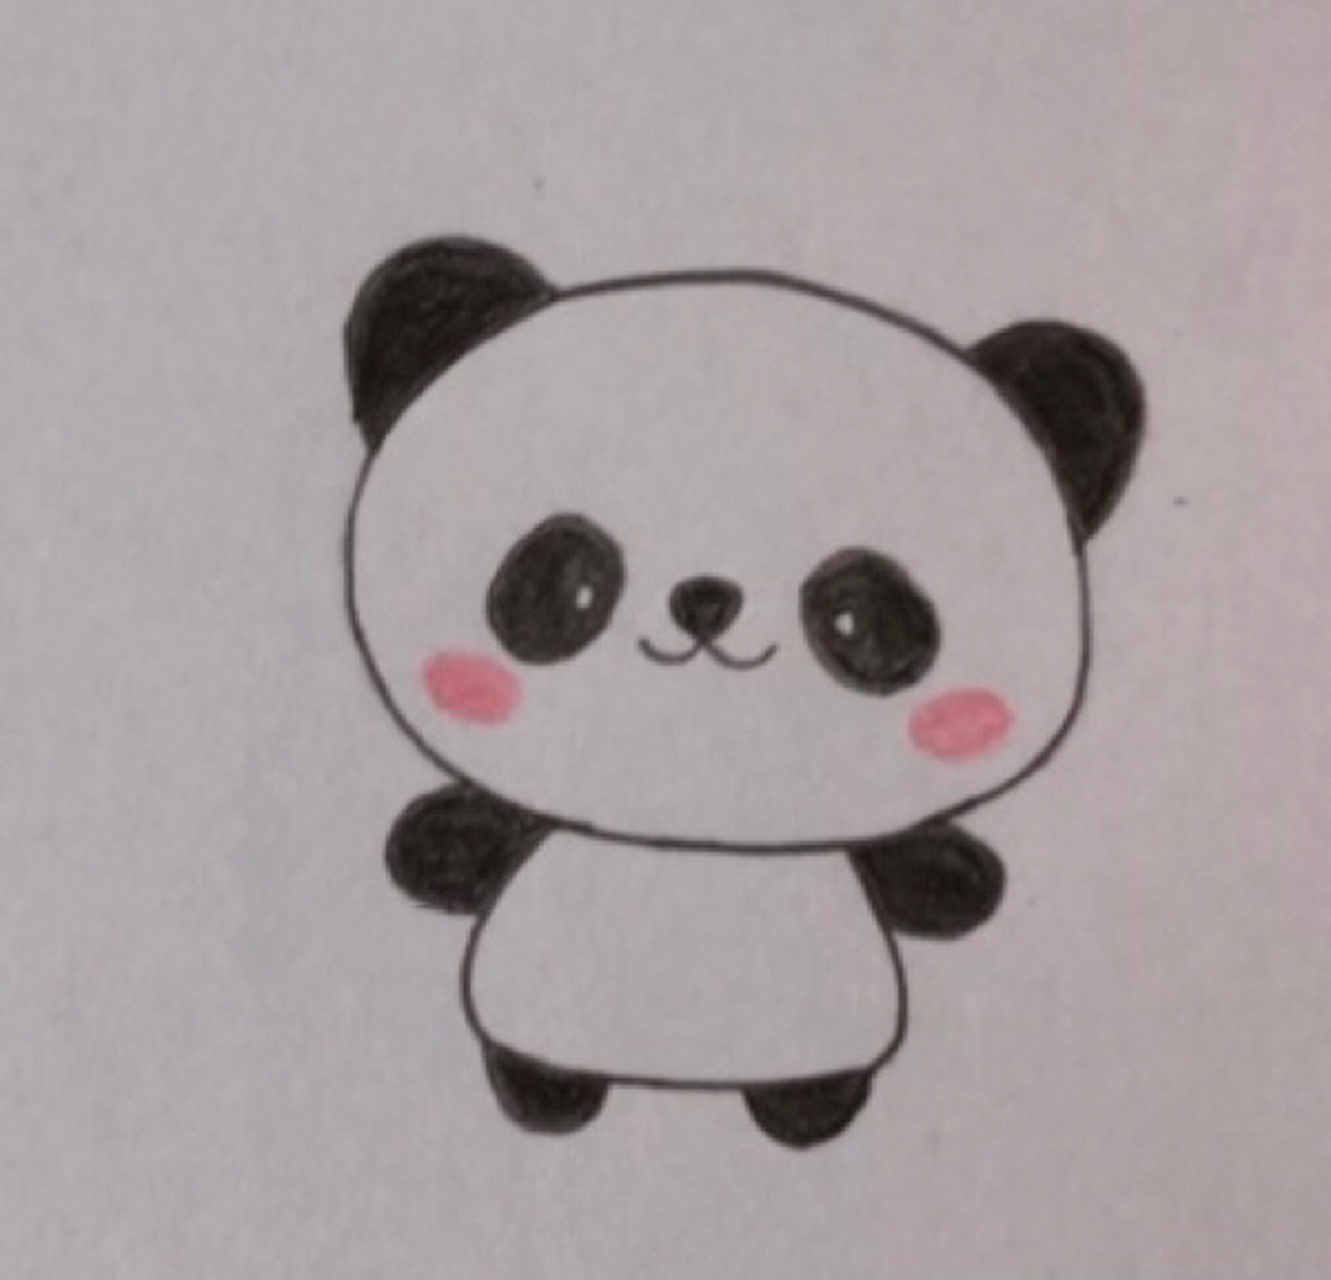 小熊猫彩铅简笔画入门教程 先画草图,画好彩铅勾线,再慢慢上色,慢慢叠